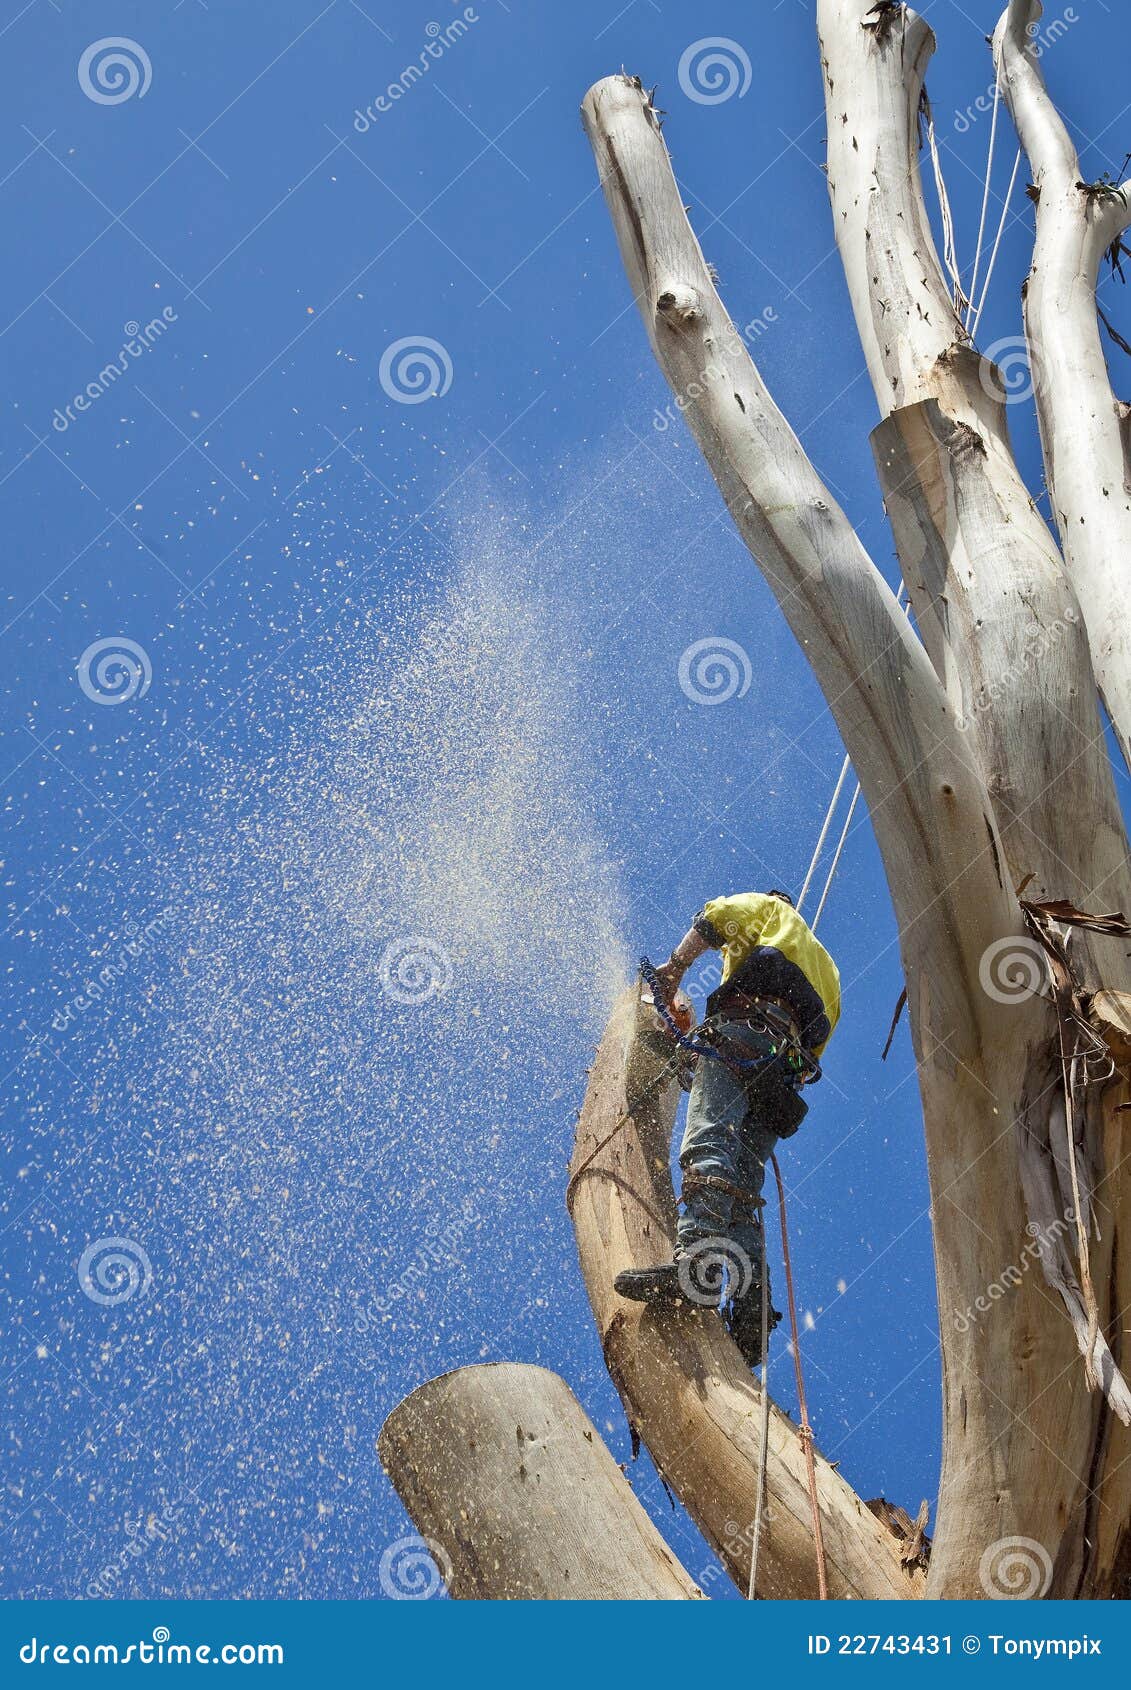 arborist at work felling large tree